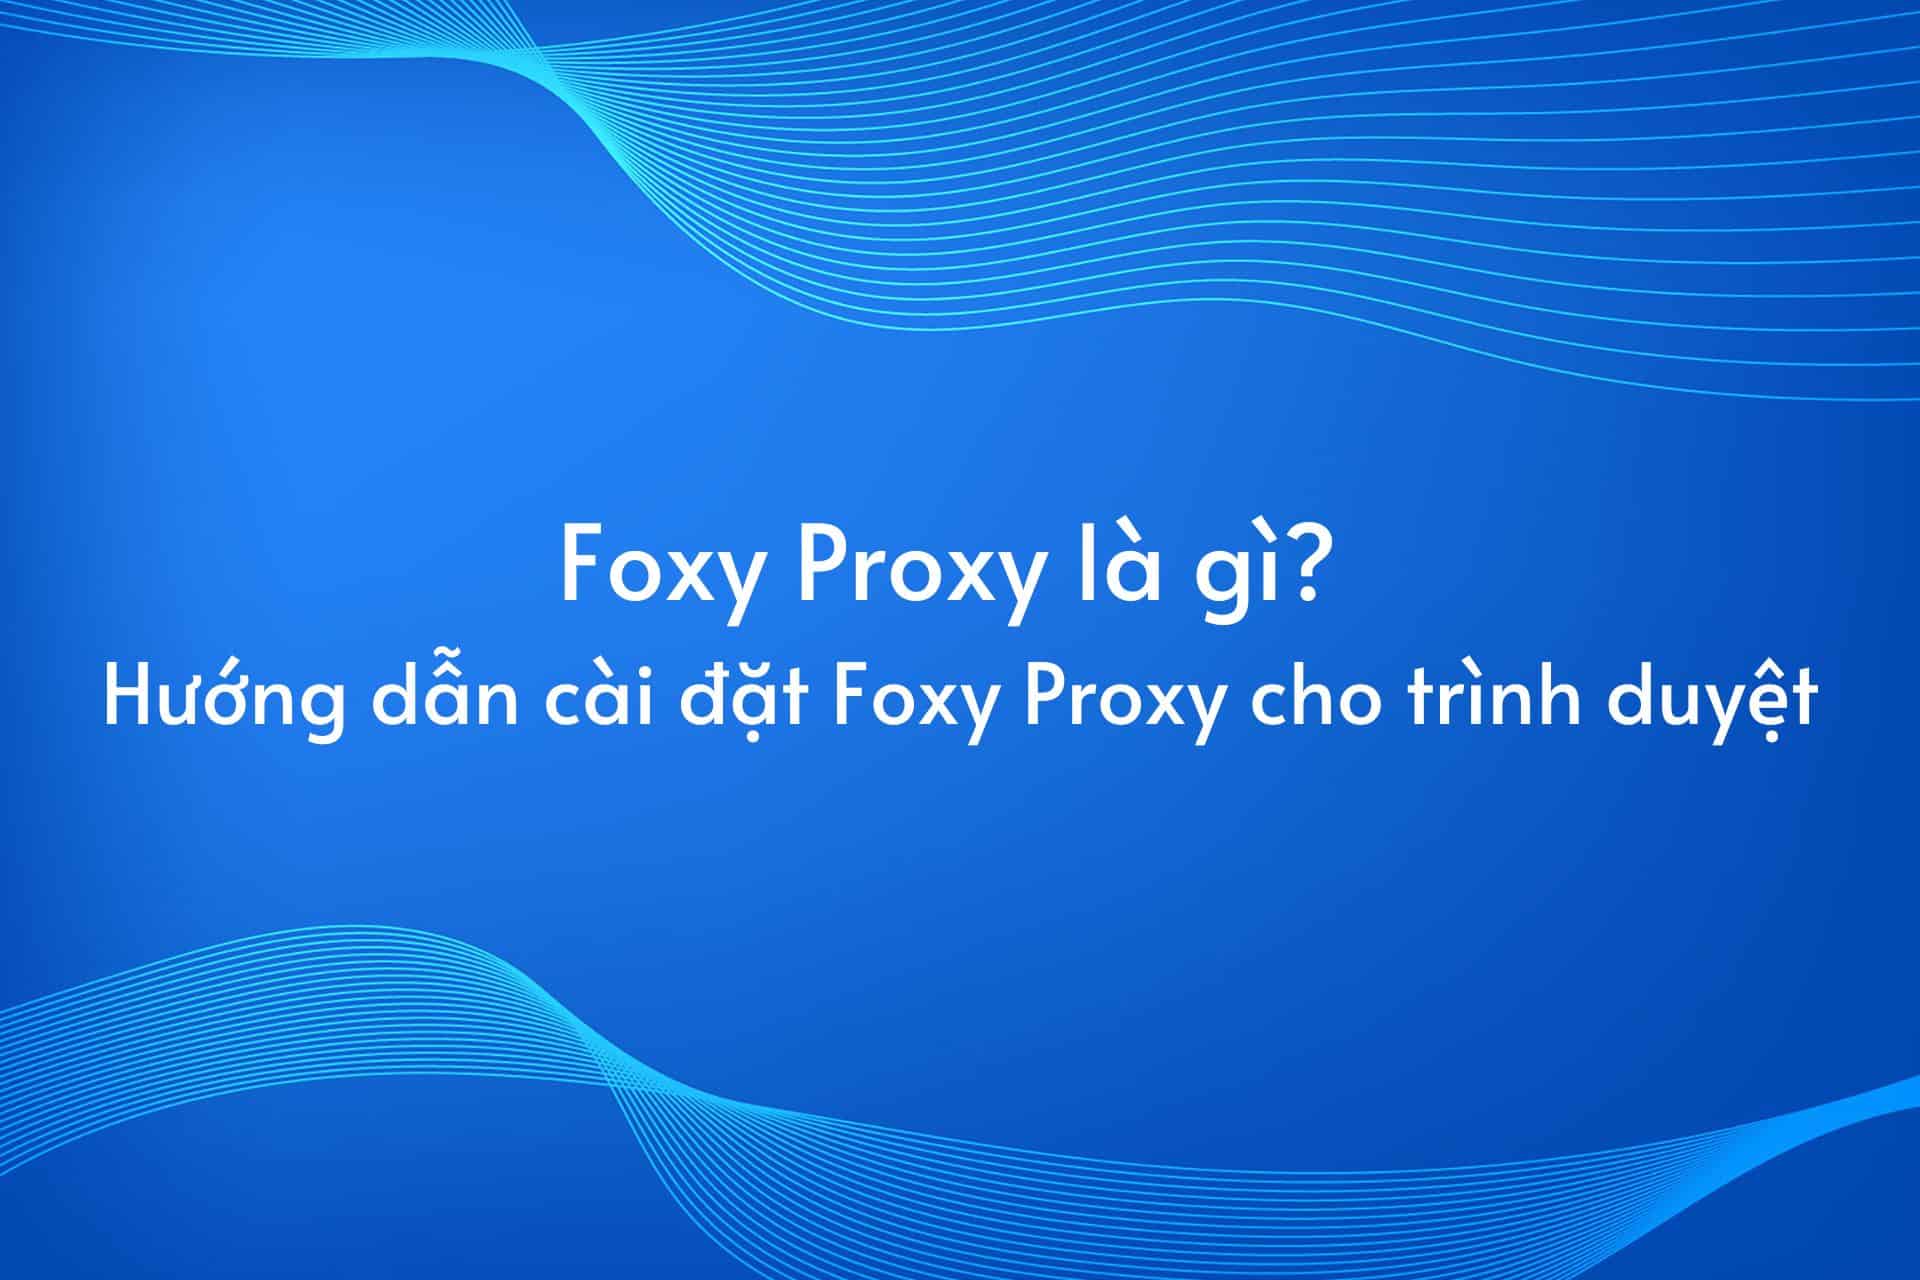 Foxy Proxy là gì? Hướng dẫn cài đặt Foxy Proxy cho trình duyệt